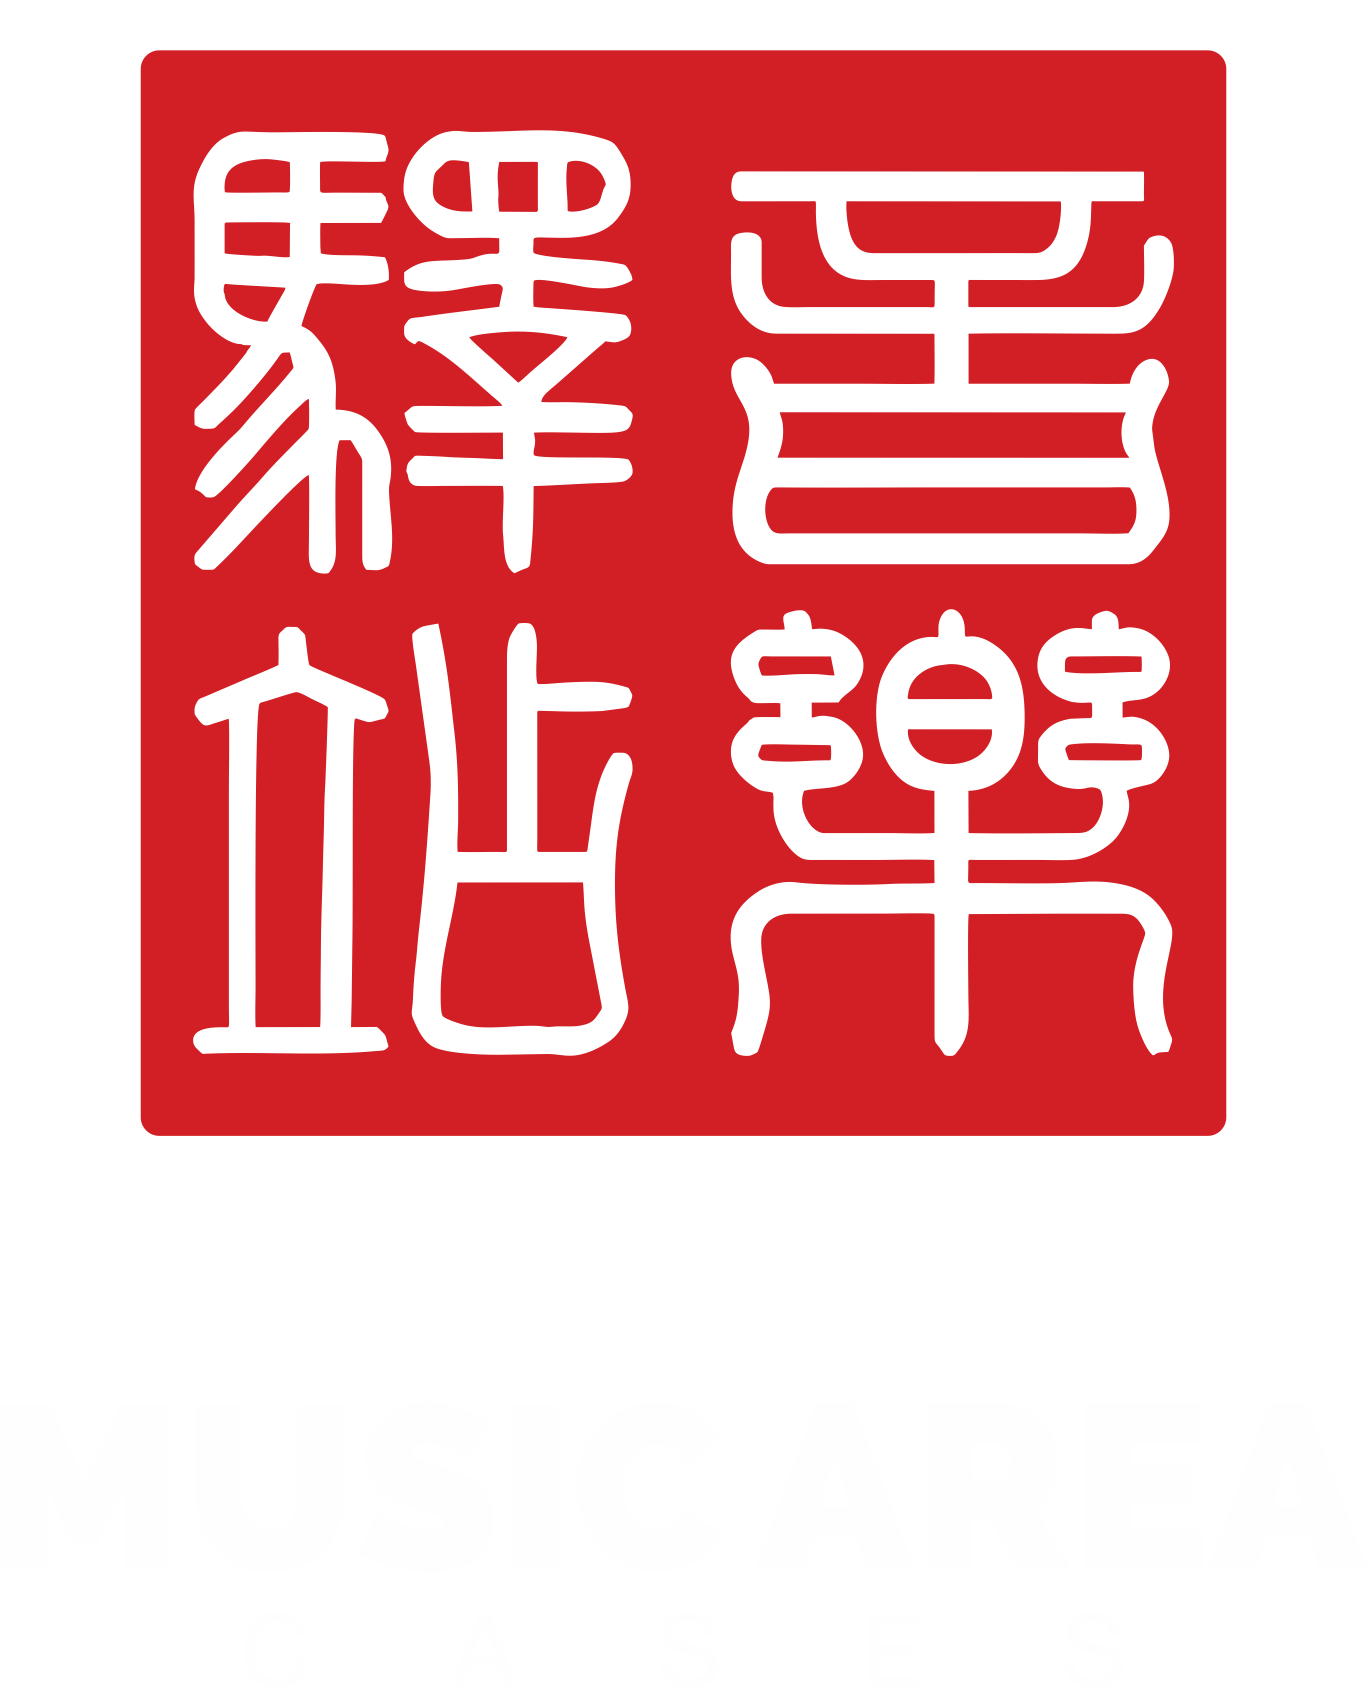 Area Logo - Music Area Logo. Music Area Protection for Precious Property